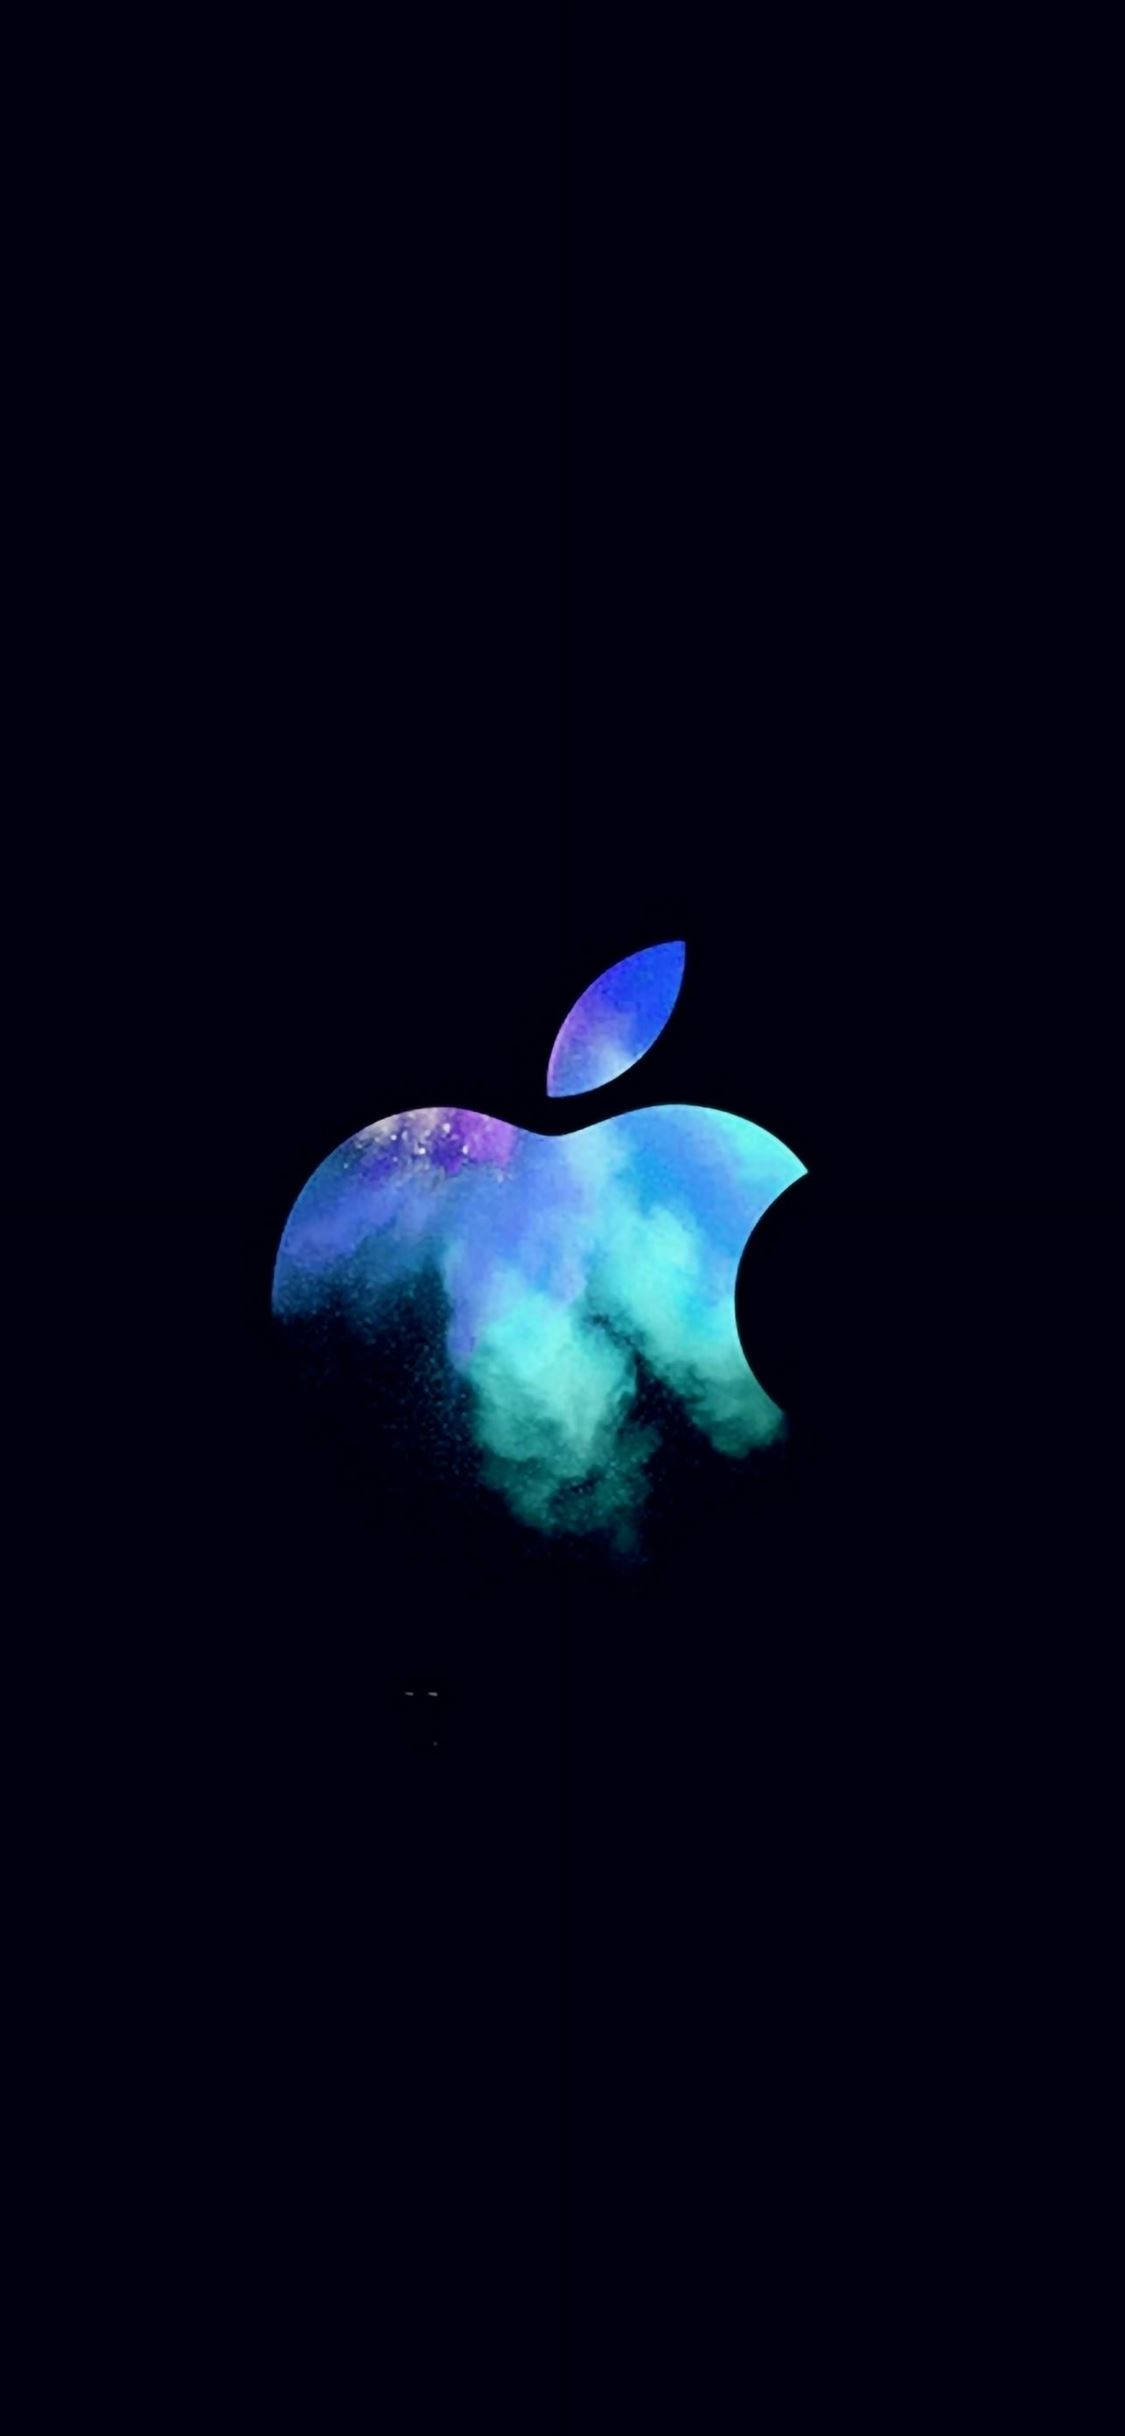 синий логотип apple iphone темный